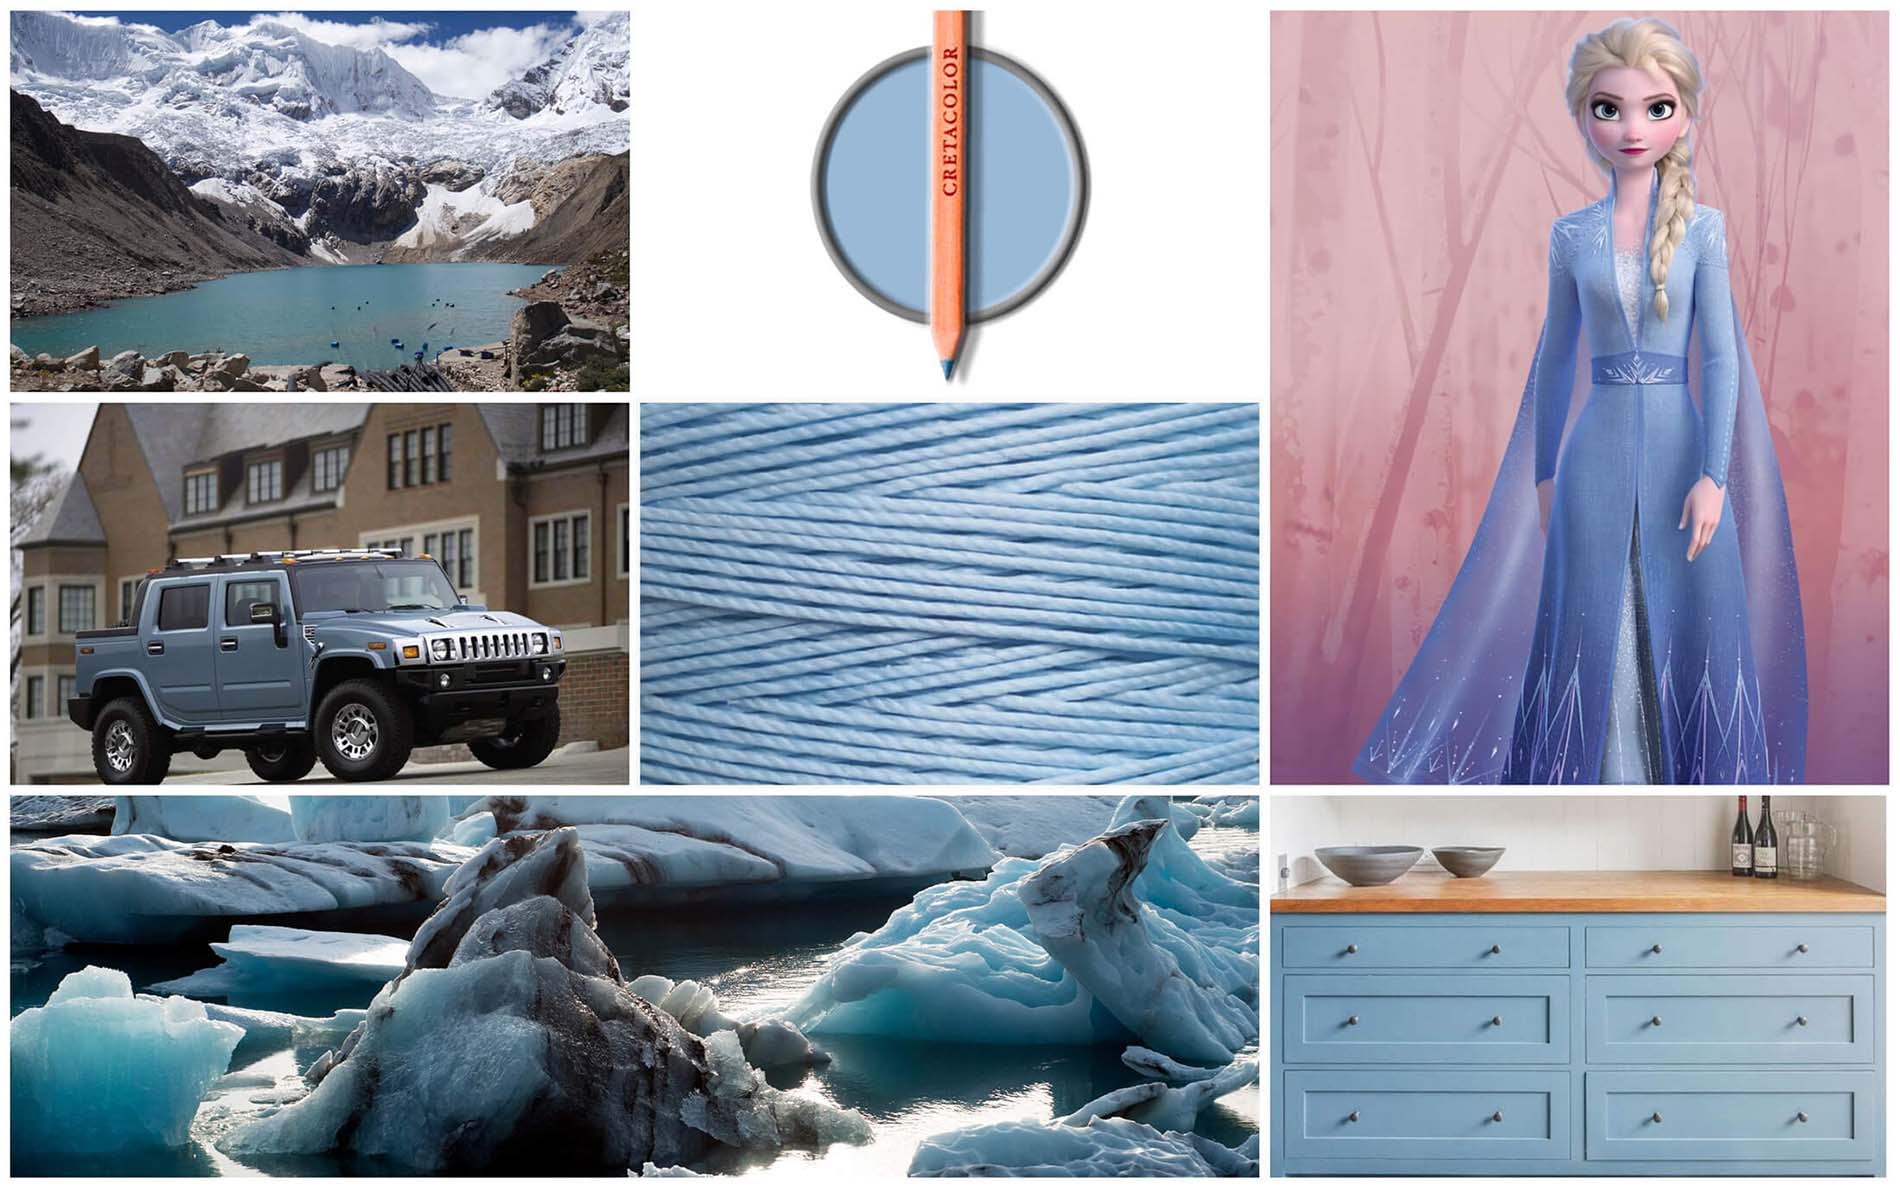 Glacier lake - модные цвета и оттенки 2022 Пантон - палитра весна лета 2022 по версии института цвета